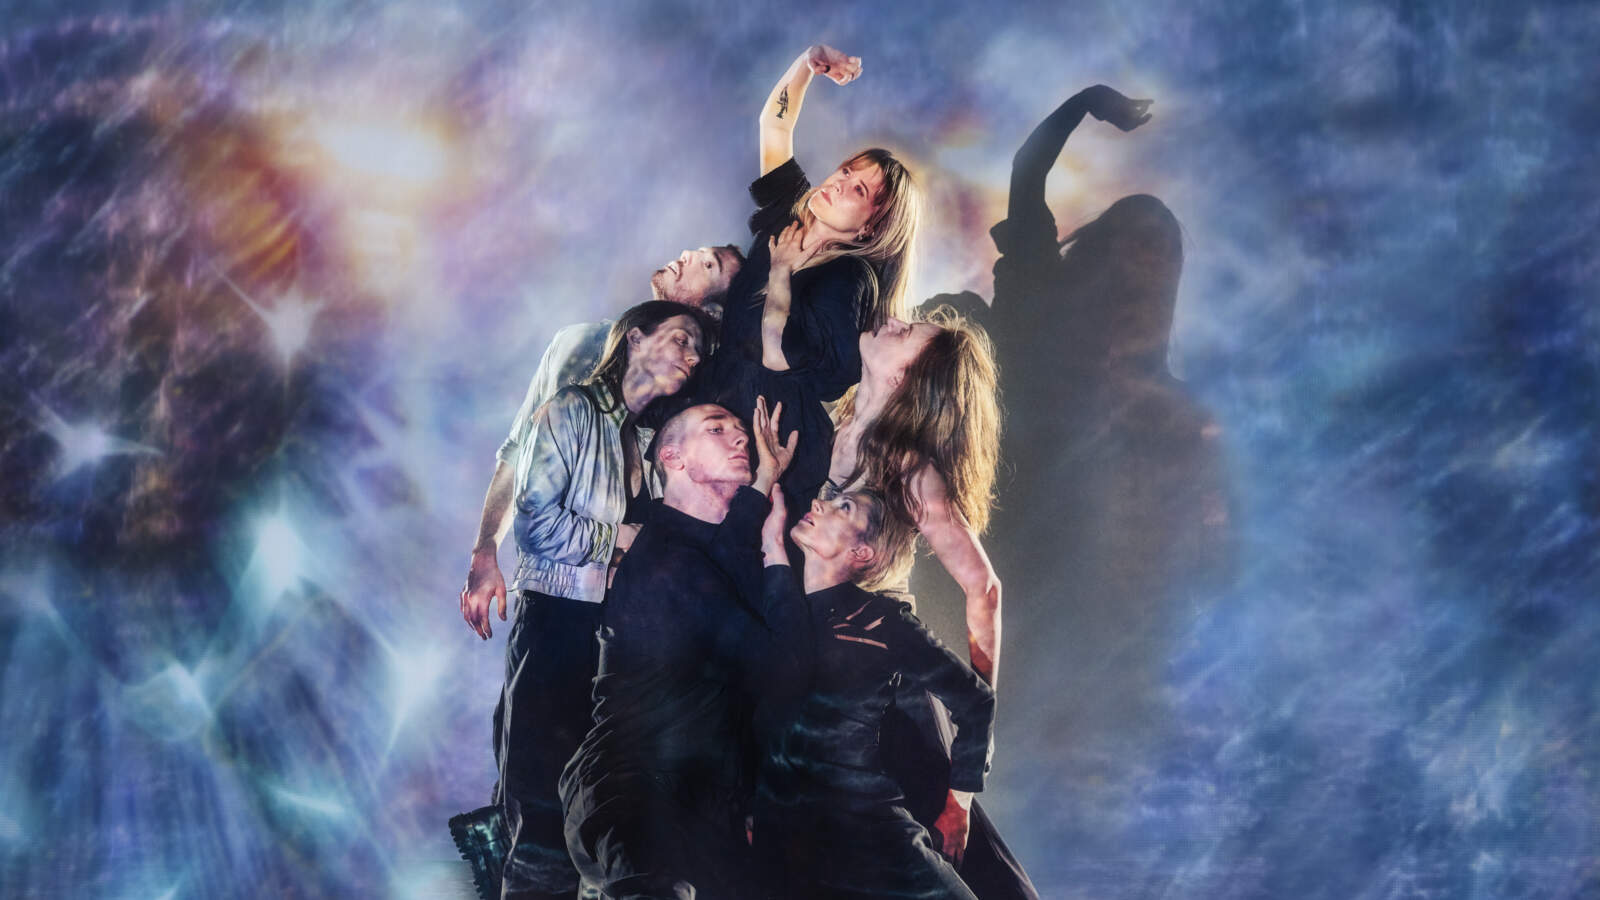 Sex dansare står tätt runt Anna som höjs över dem med en arm sträckt uppåt. Ljus projiceras över gruppen och fonden bakom.